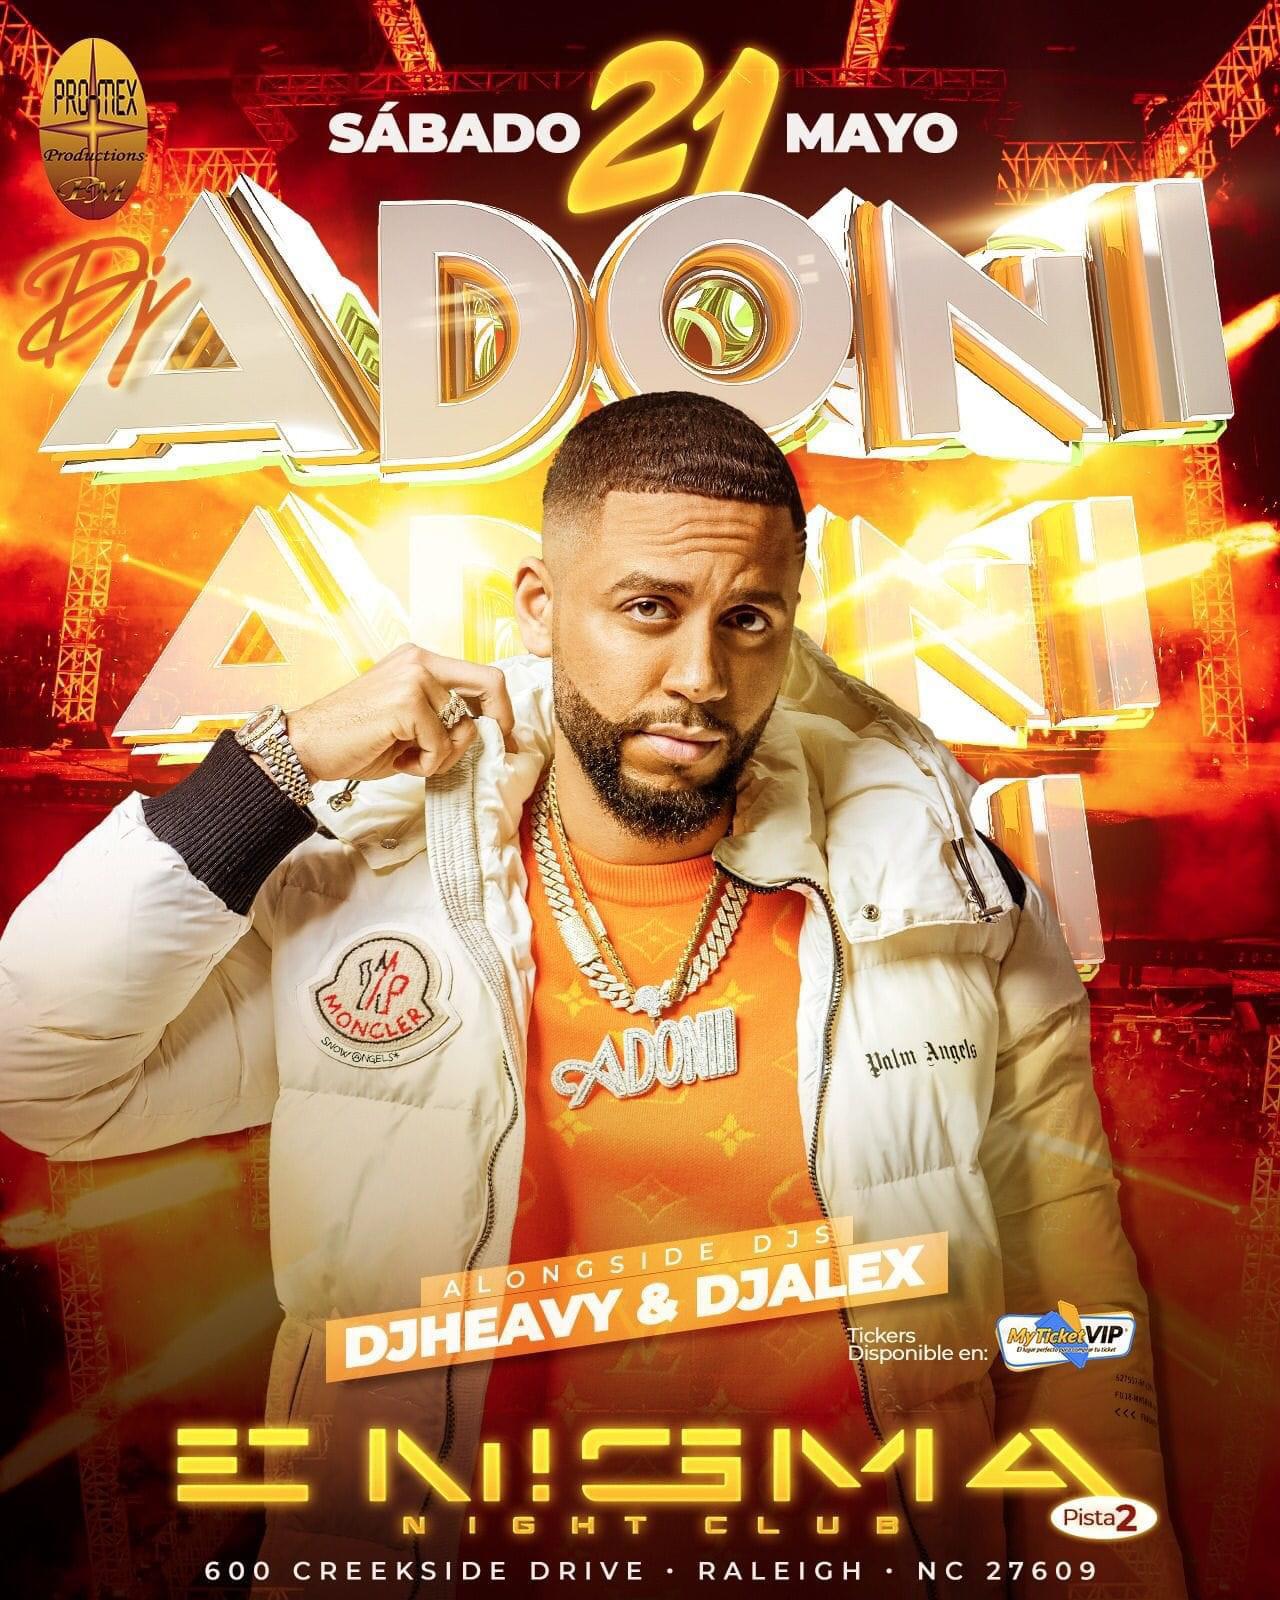 DJ ADONI